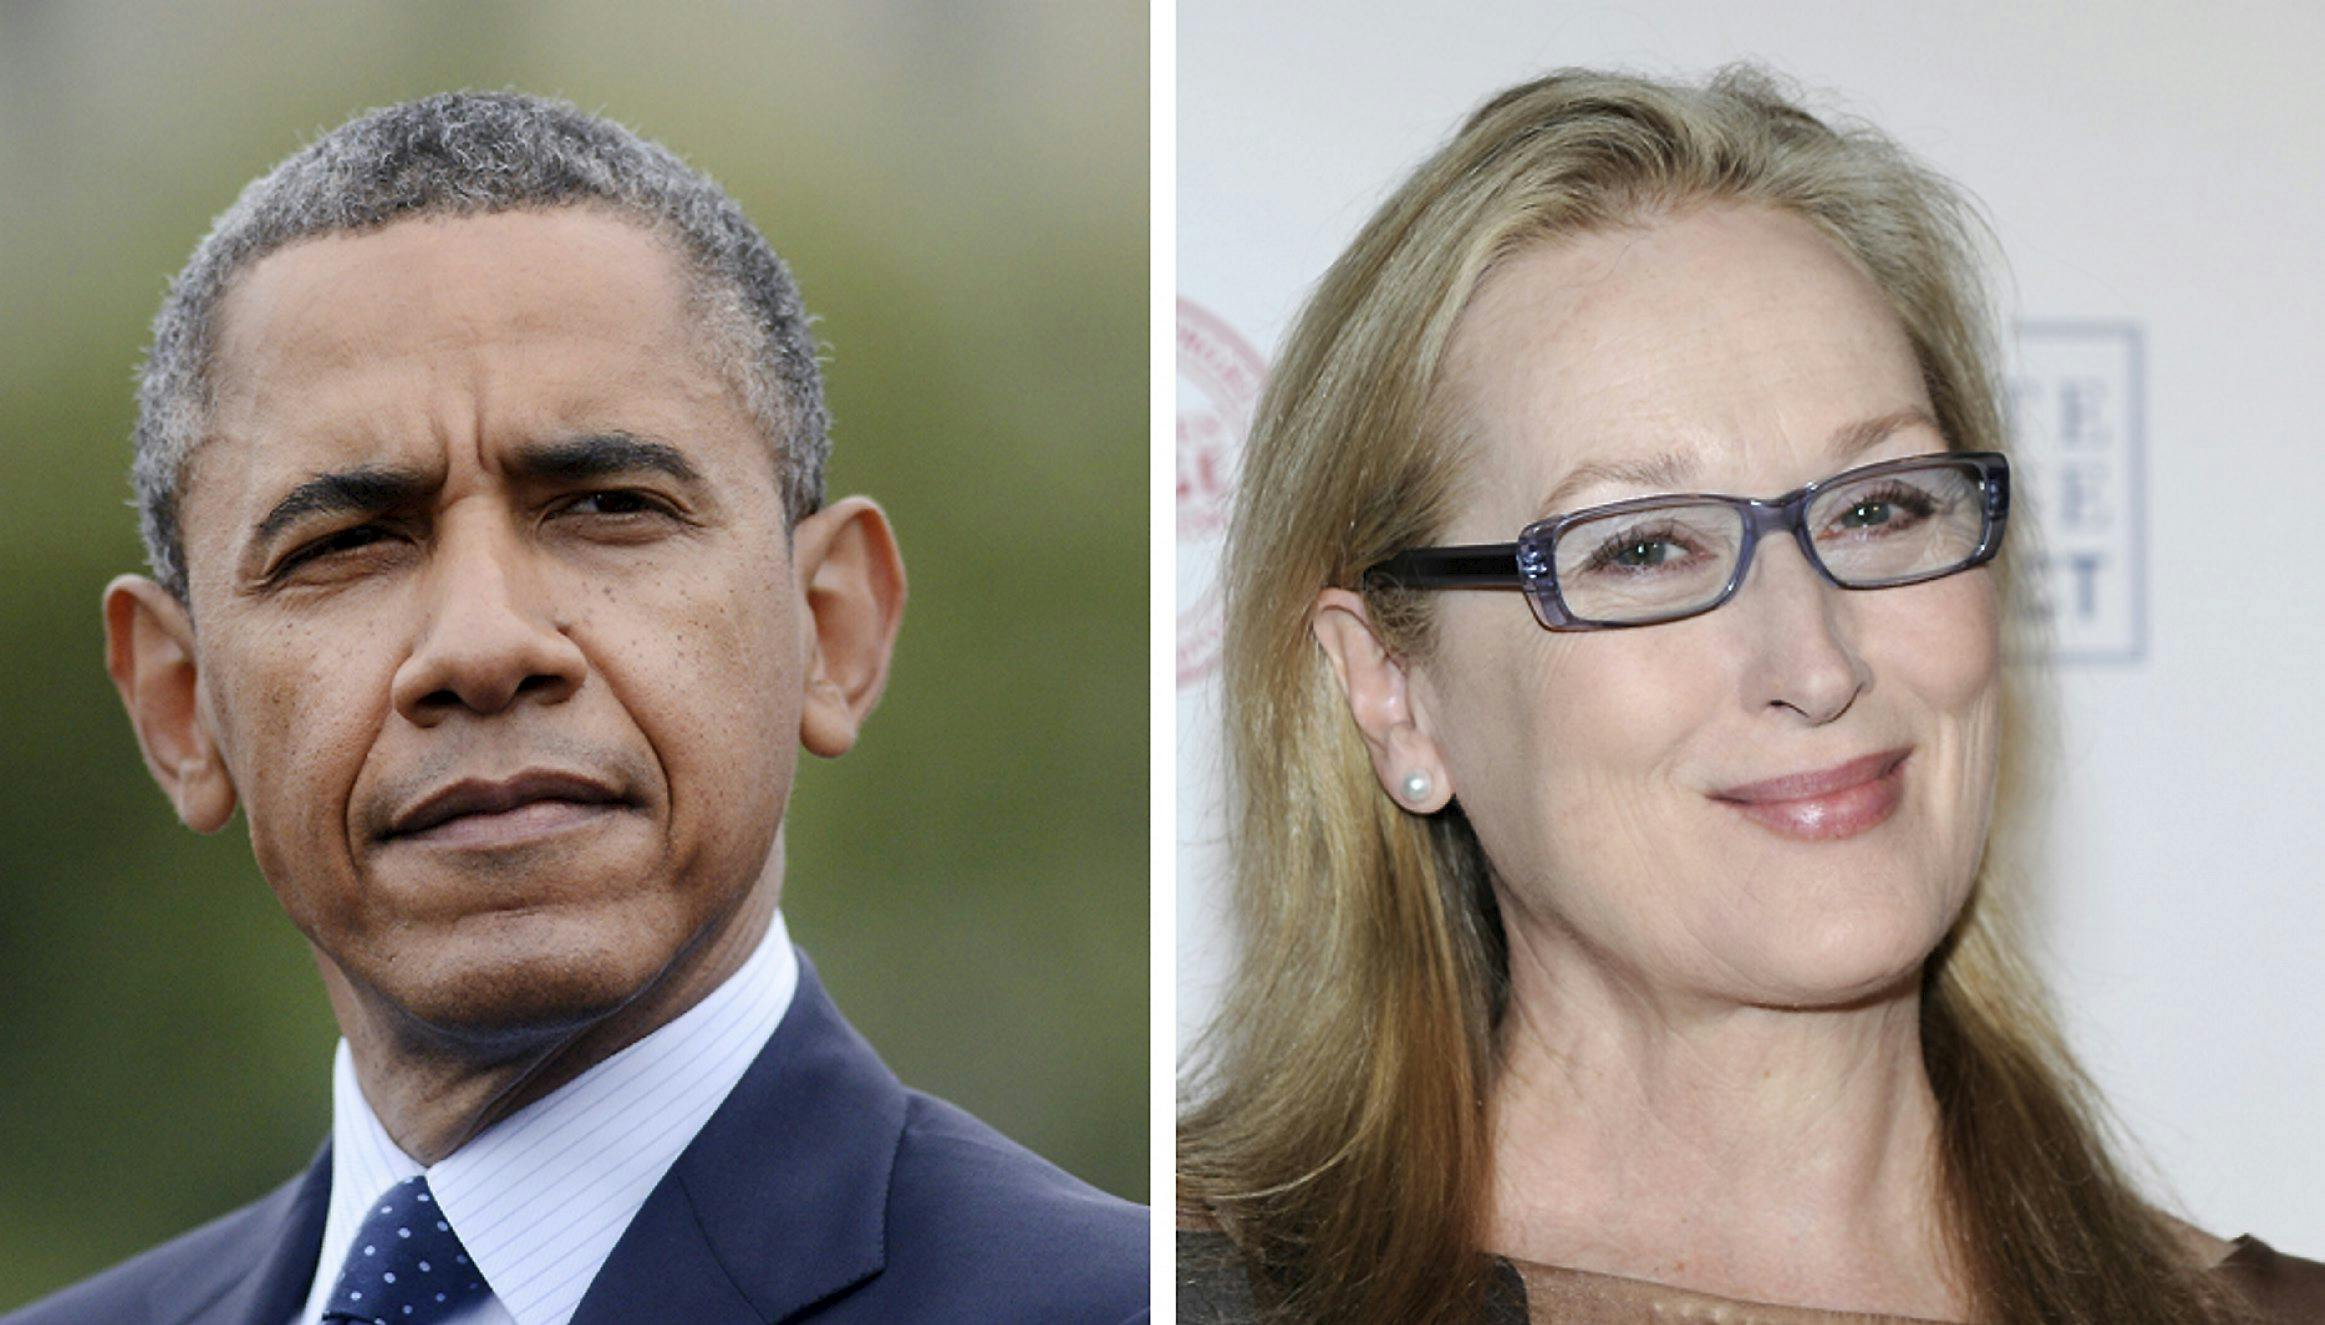 Se klippet med Obama: - Jeg elsker Meryl Streep